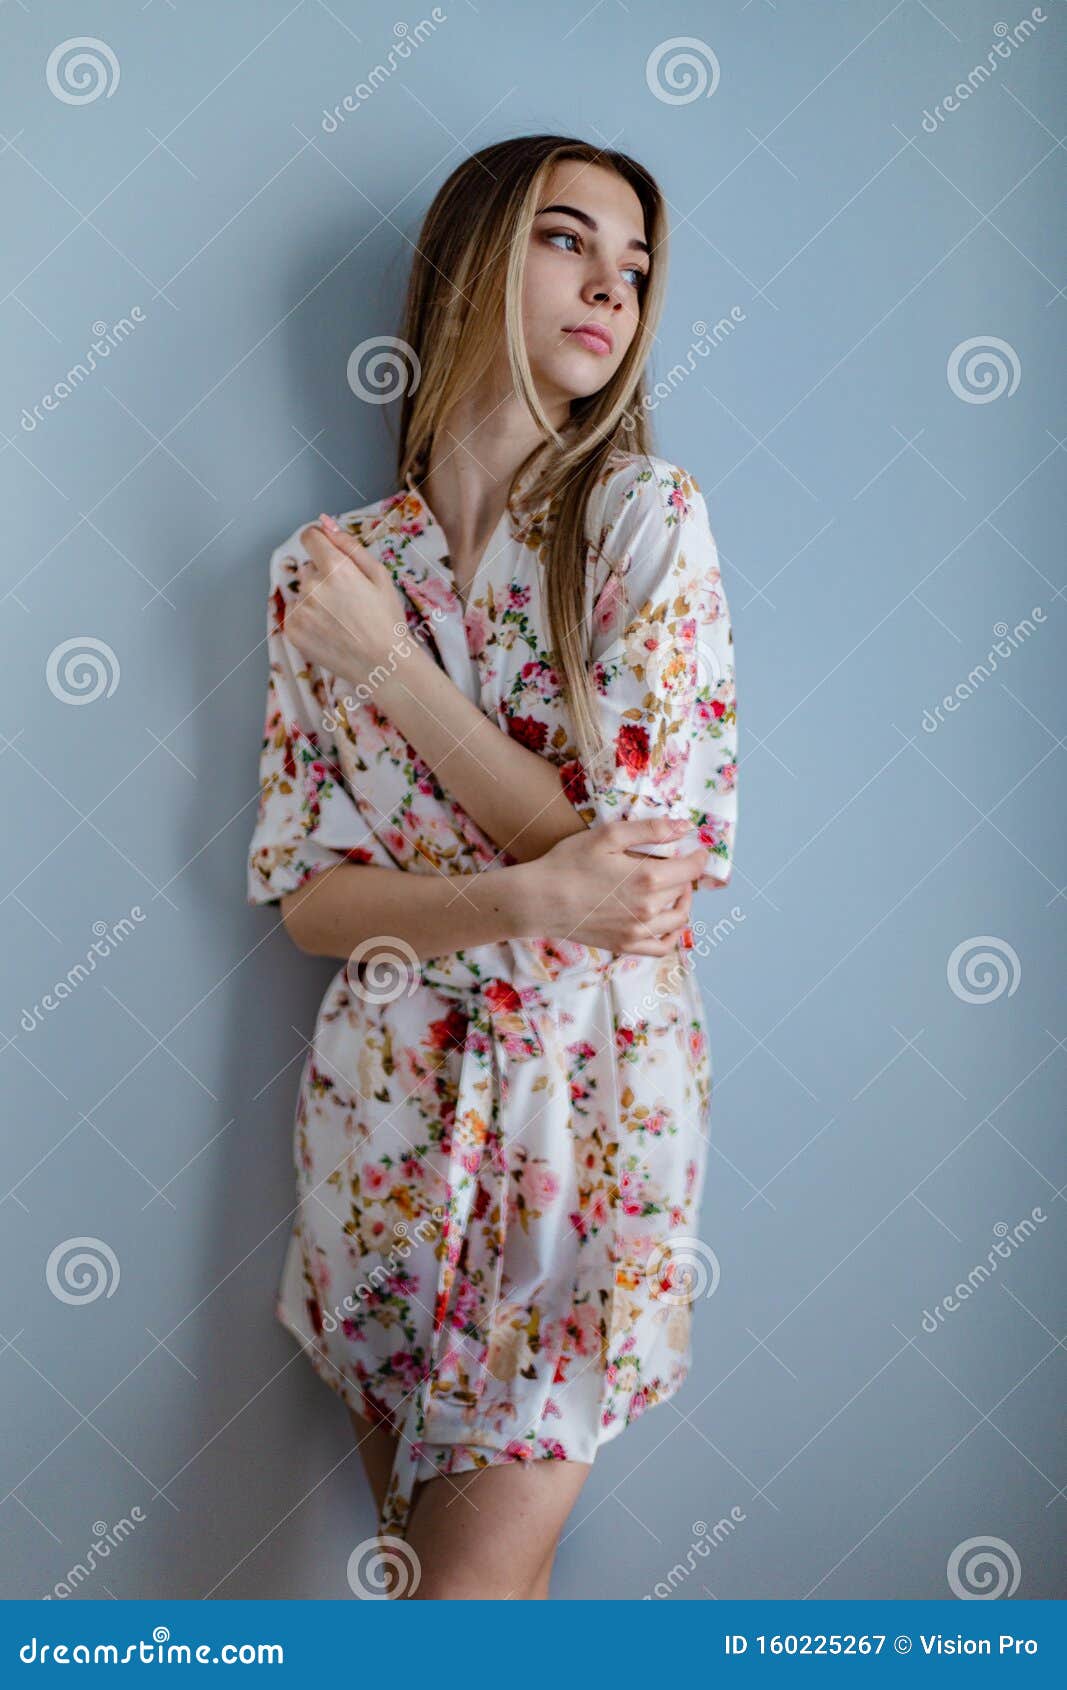 Retrato De Una Chica Sexy En Pijama SatÃ©n Rosado, Posando En Moda Imagen de archivo - Imagen de belleza, 160225267